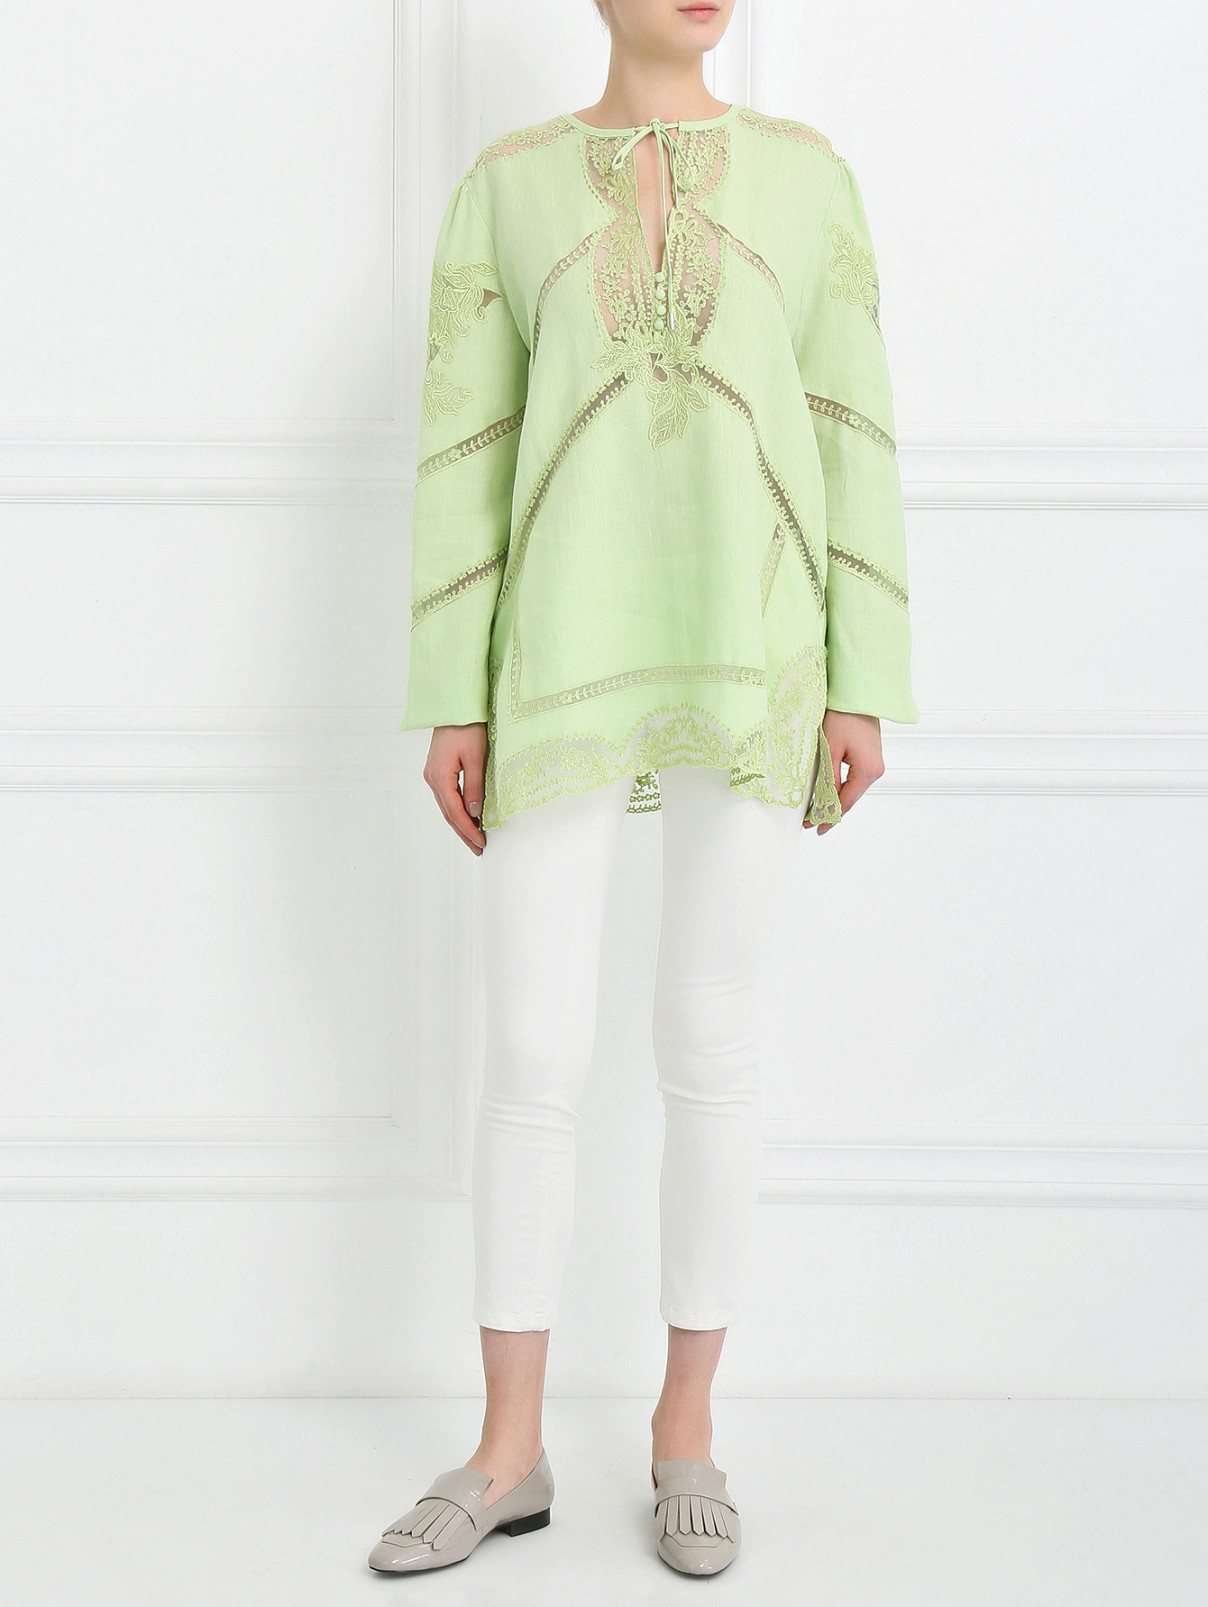 Блуза из льна с кружевными вставками Ermanno Scervino  –  Модель Общий вид  – Цвет:  Зеленый